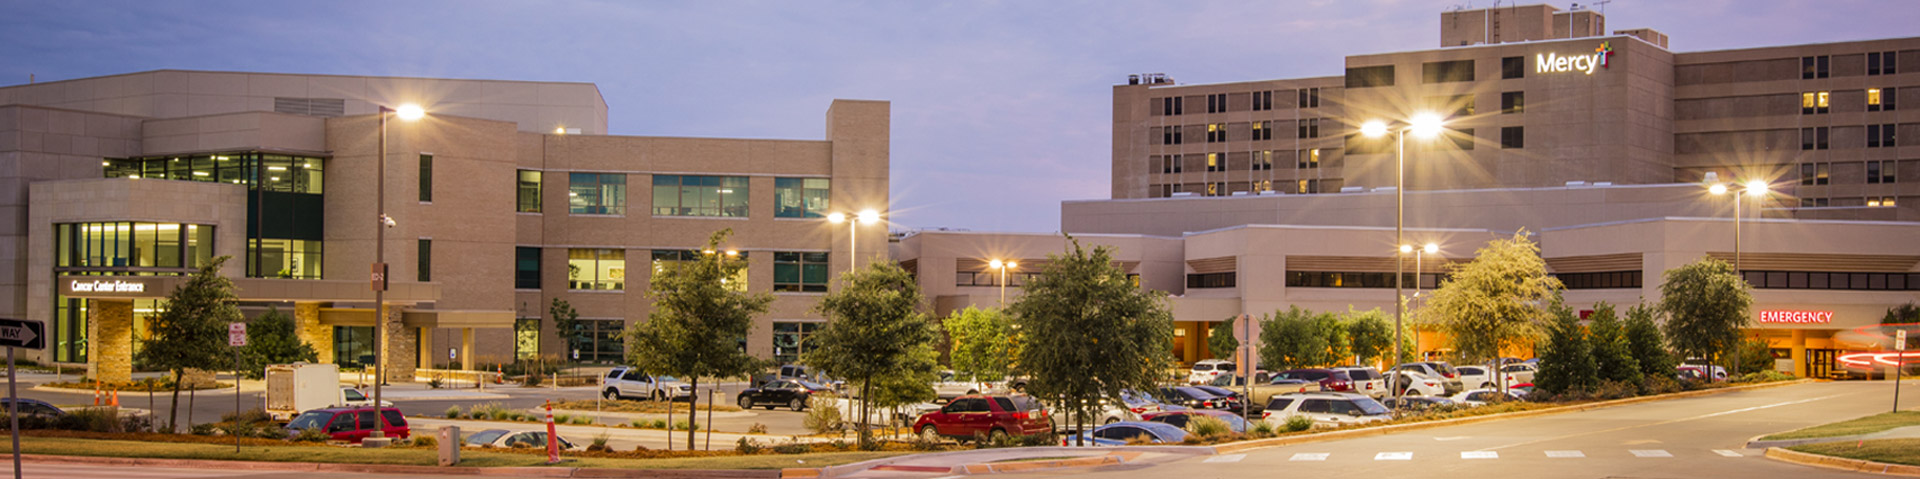 Mercy Hospital Oklahoma City Okla Mercy